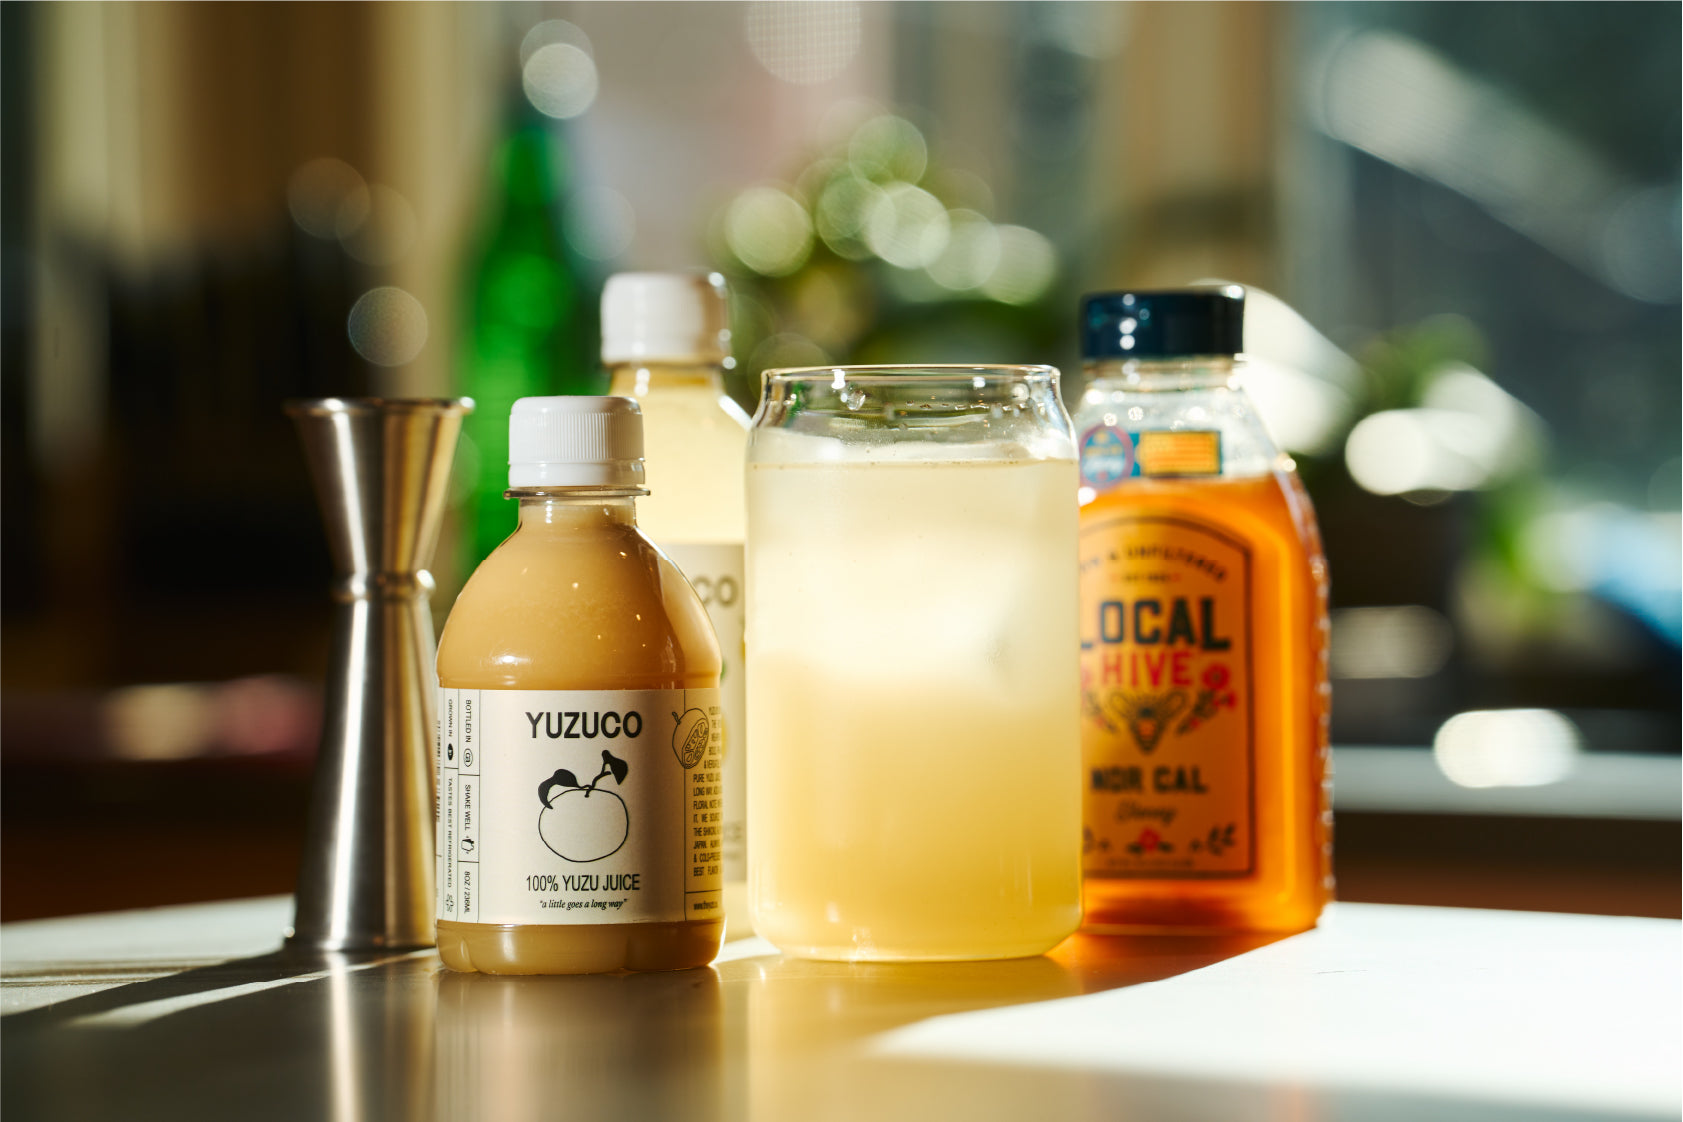 Yuzu Honey Sip, Yuzuco yuzu juice with honey and water 